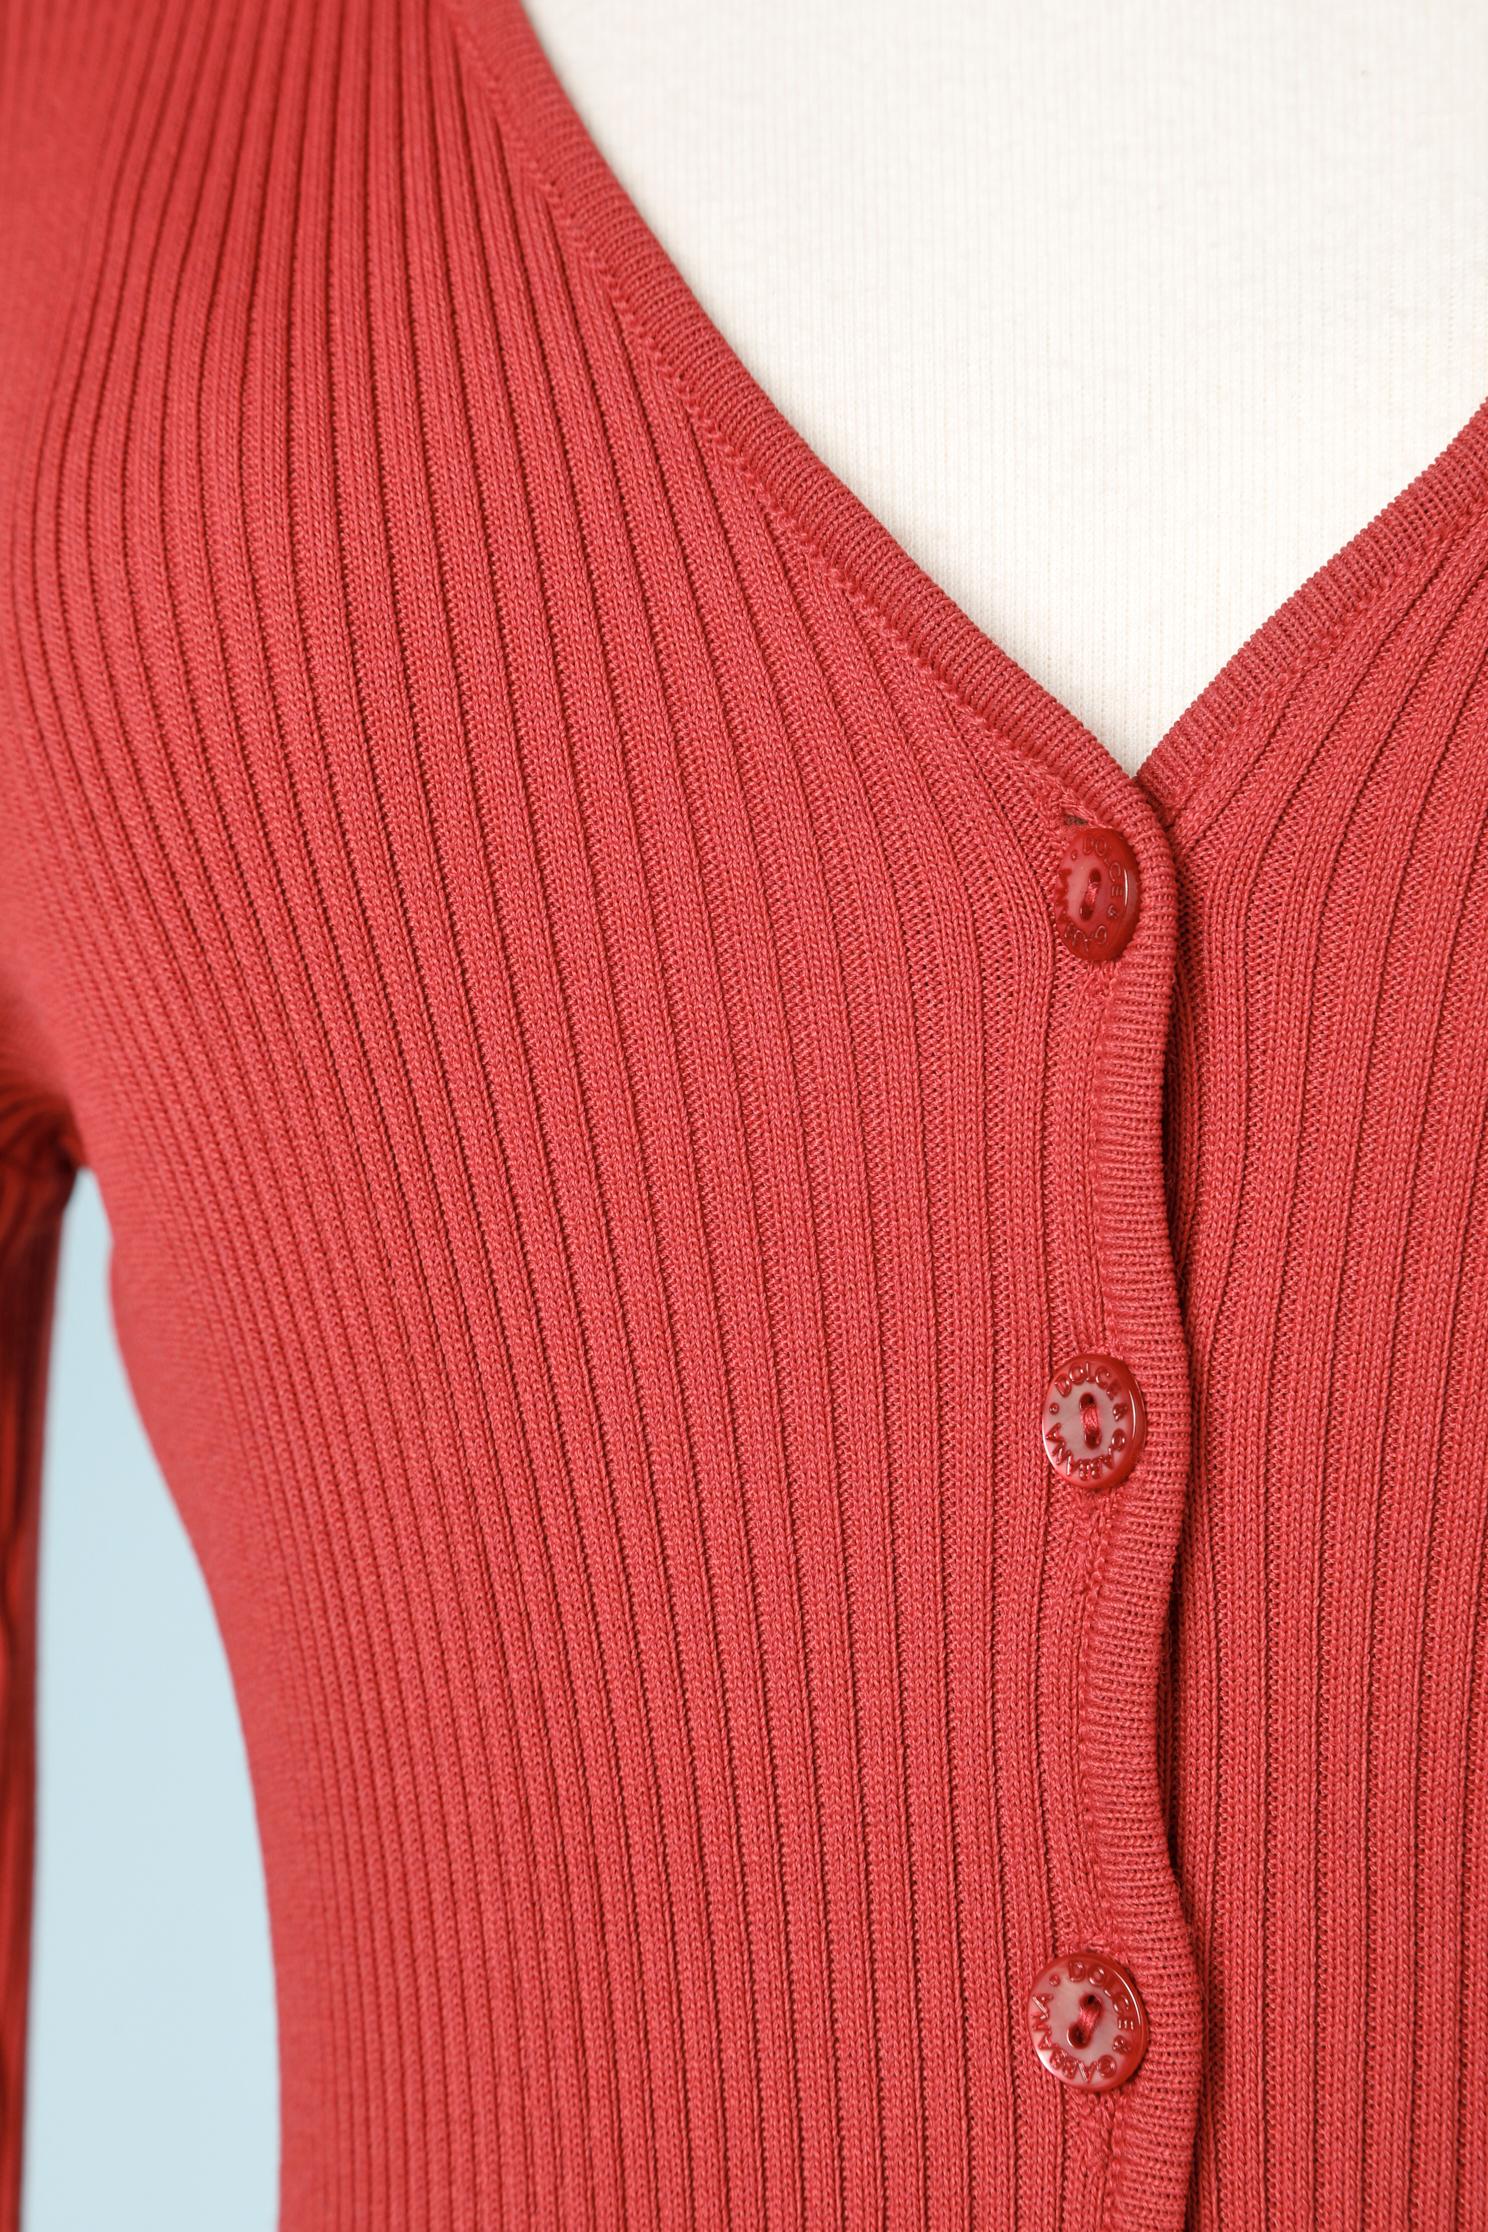 Cardigan en tricot rouge avec boutons de la marque.
TAILLE M